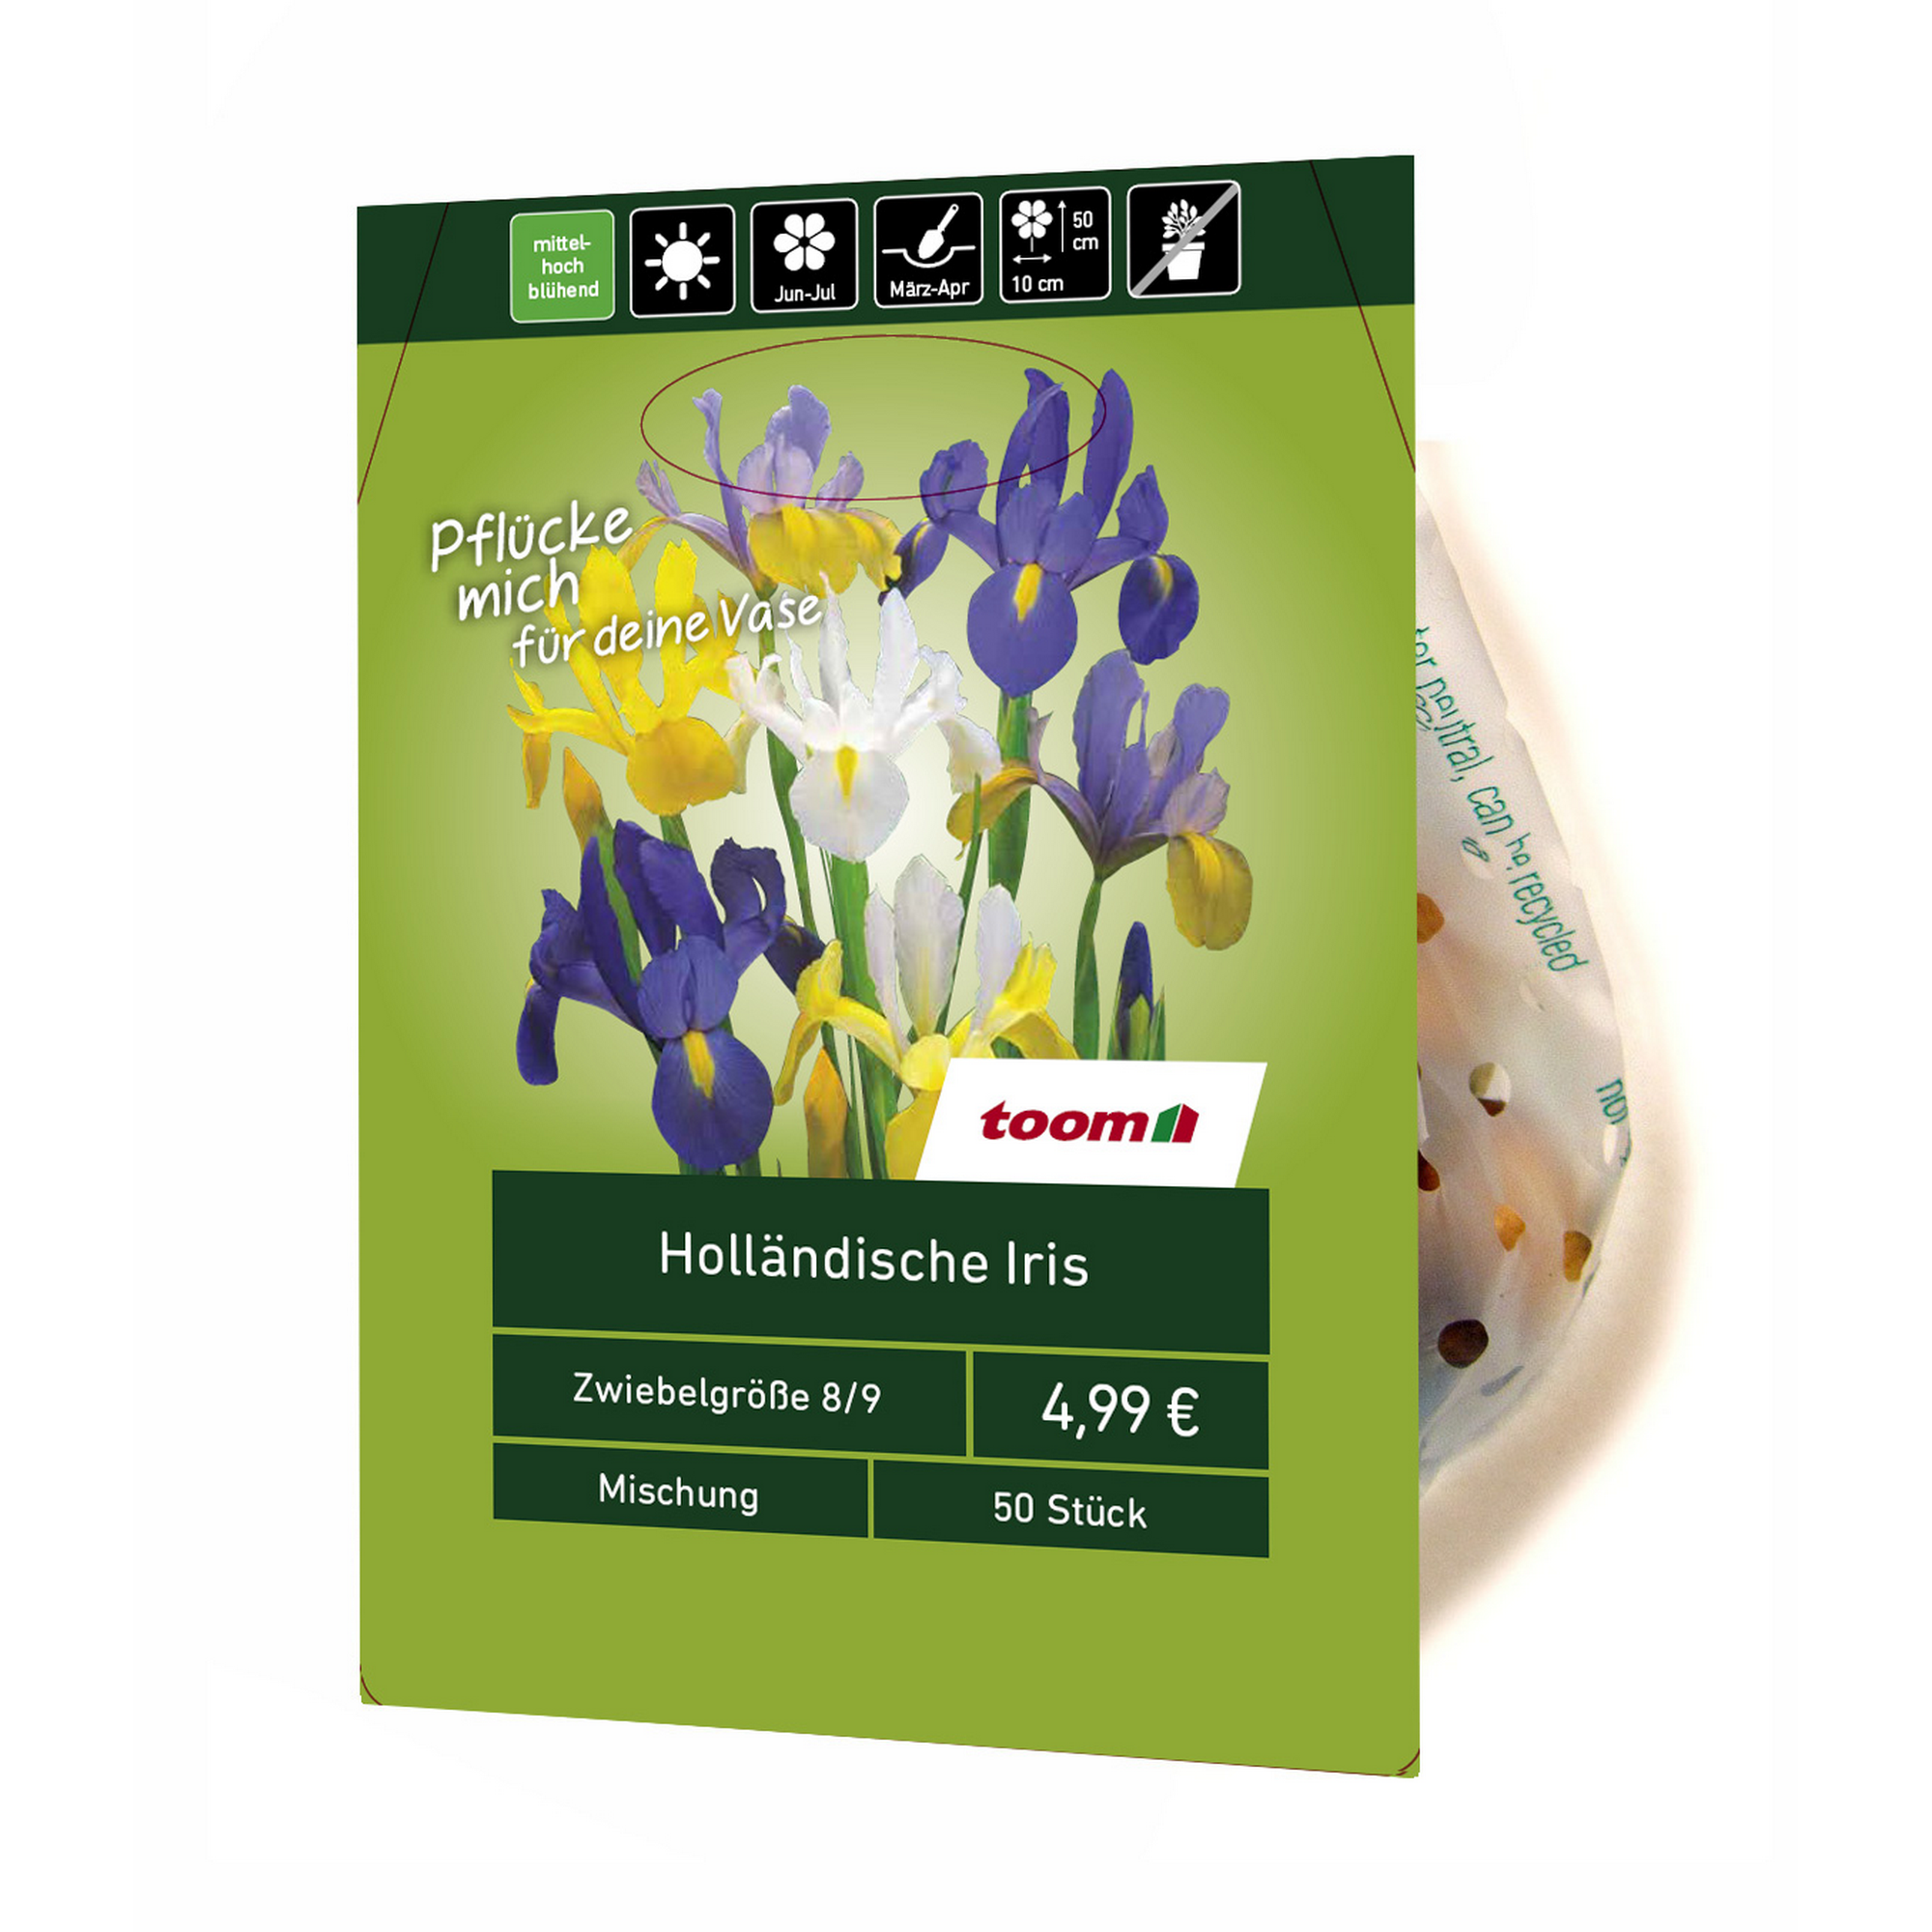 Holländische Iris 50 Stück + product picture